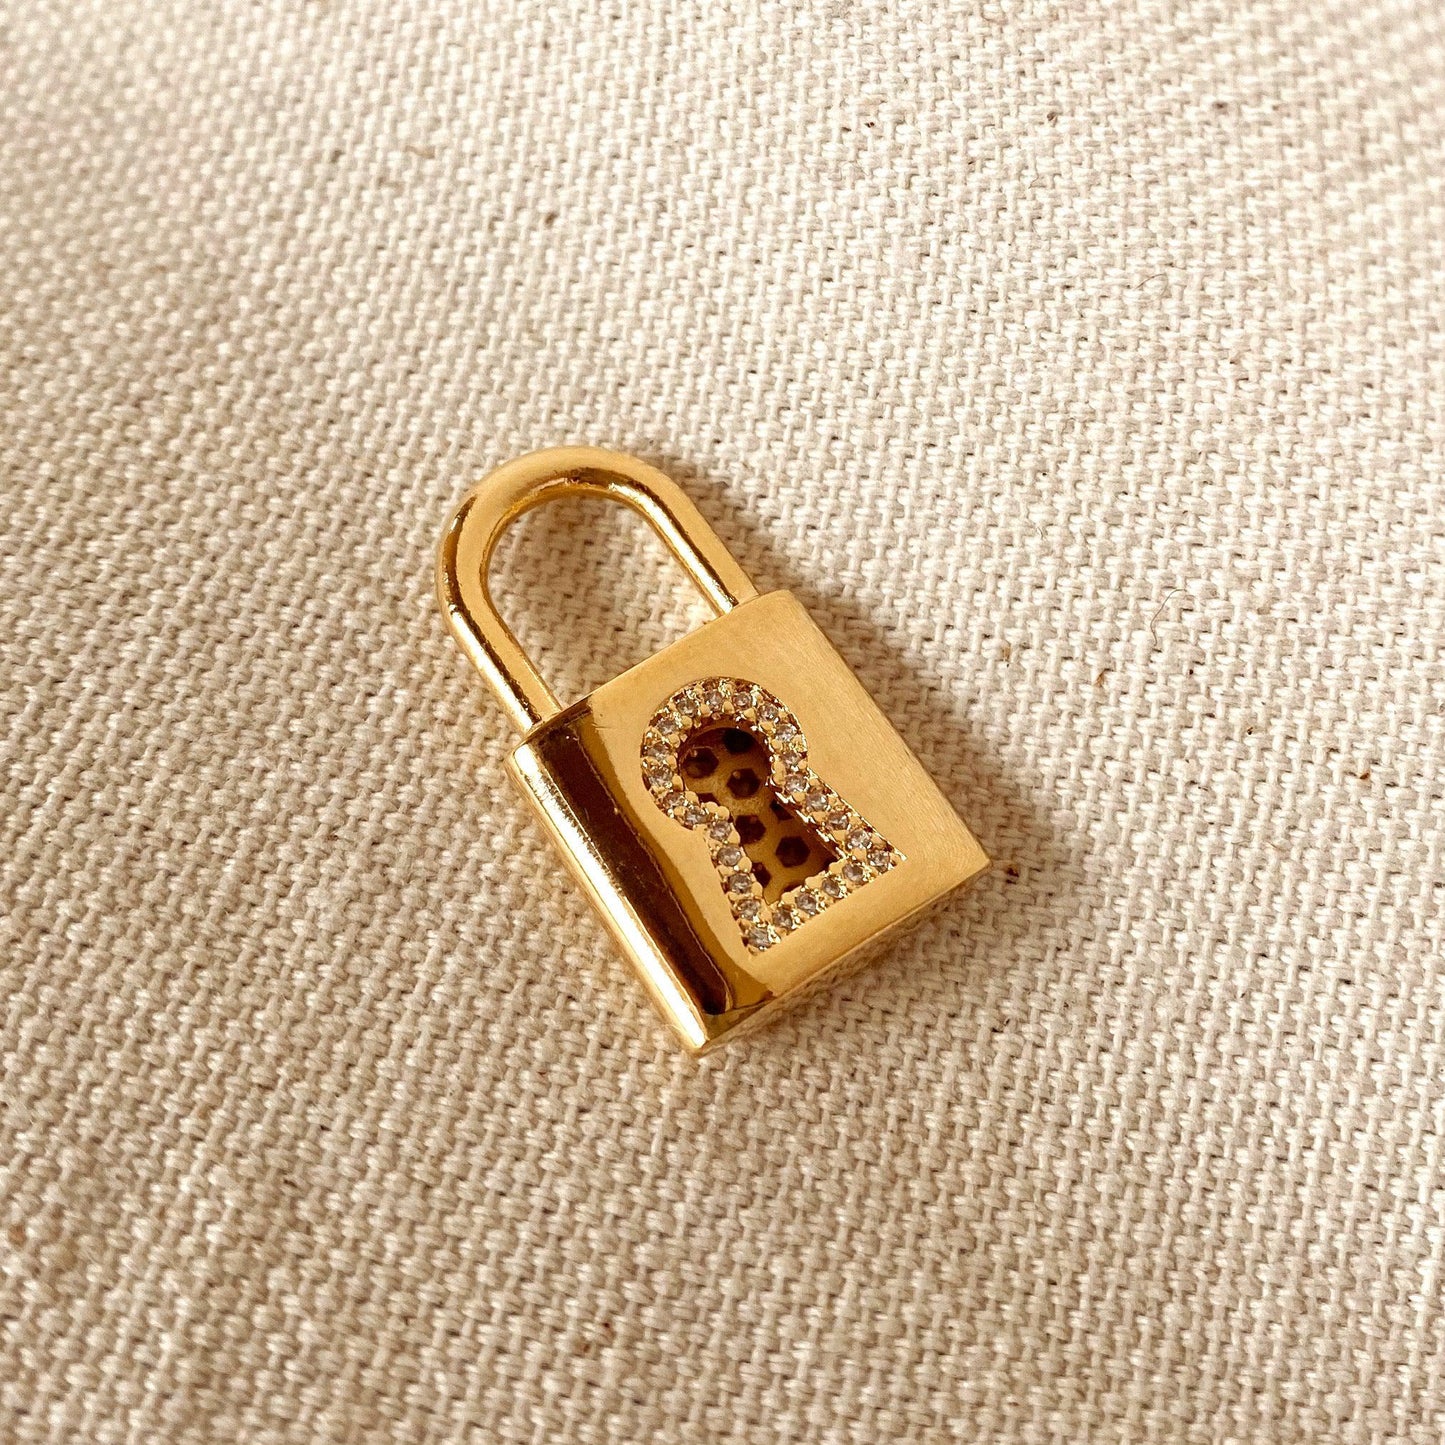 GoldFi 18k Gold Filled Fine Polished Love Lock Pendant